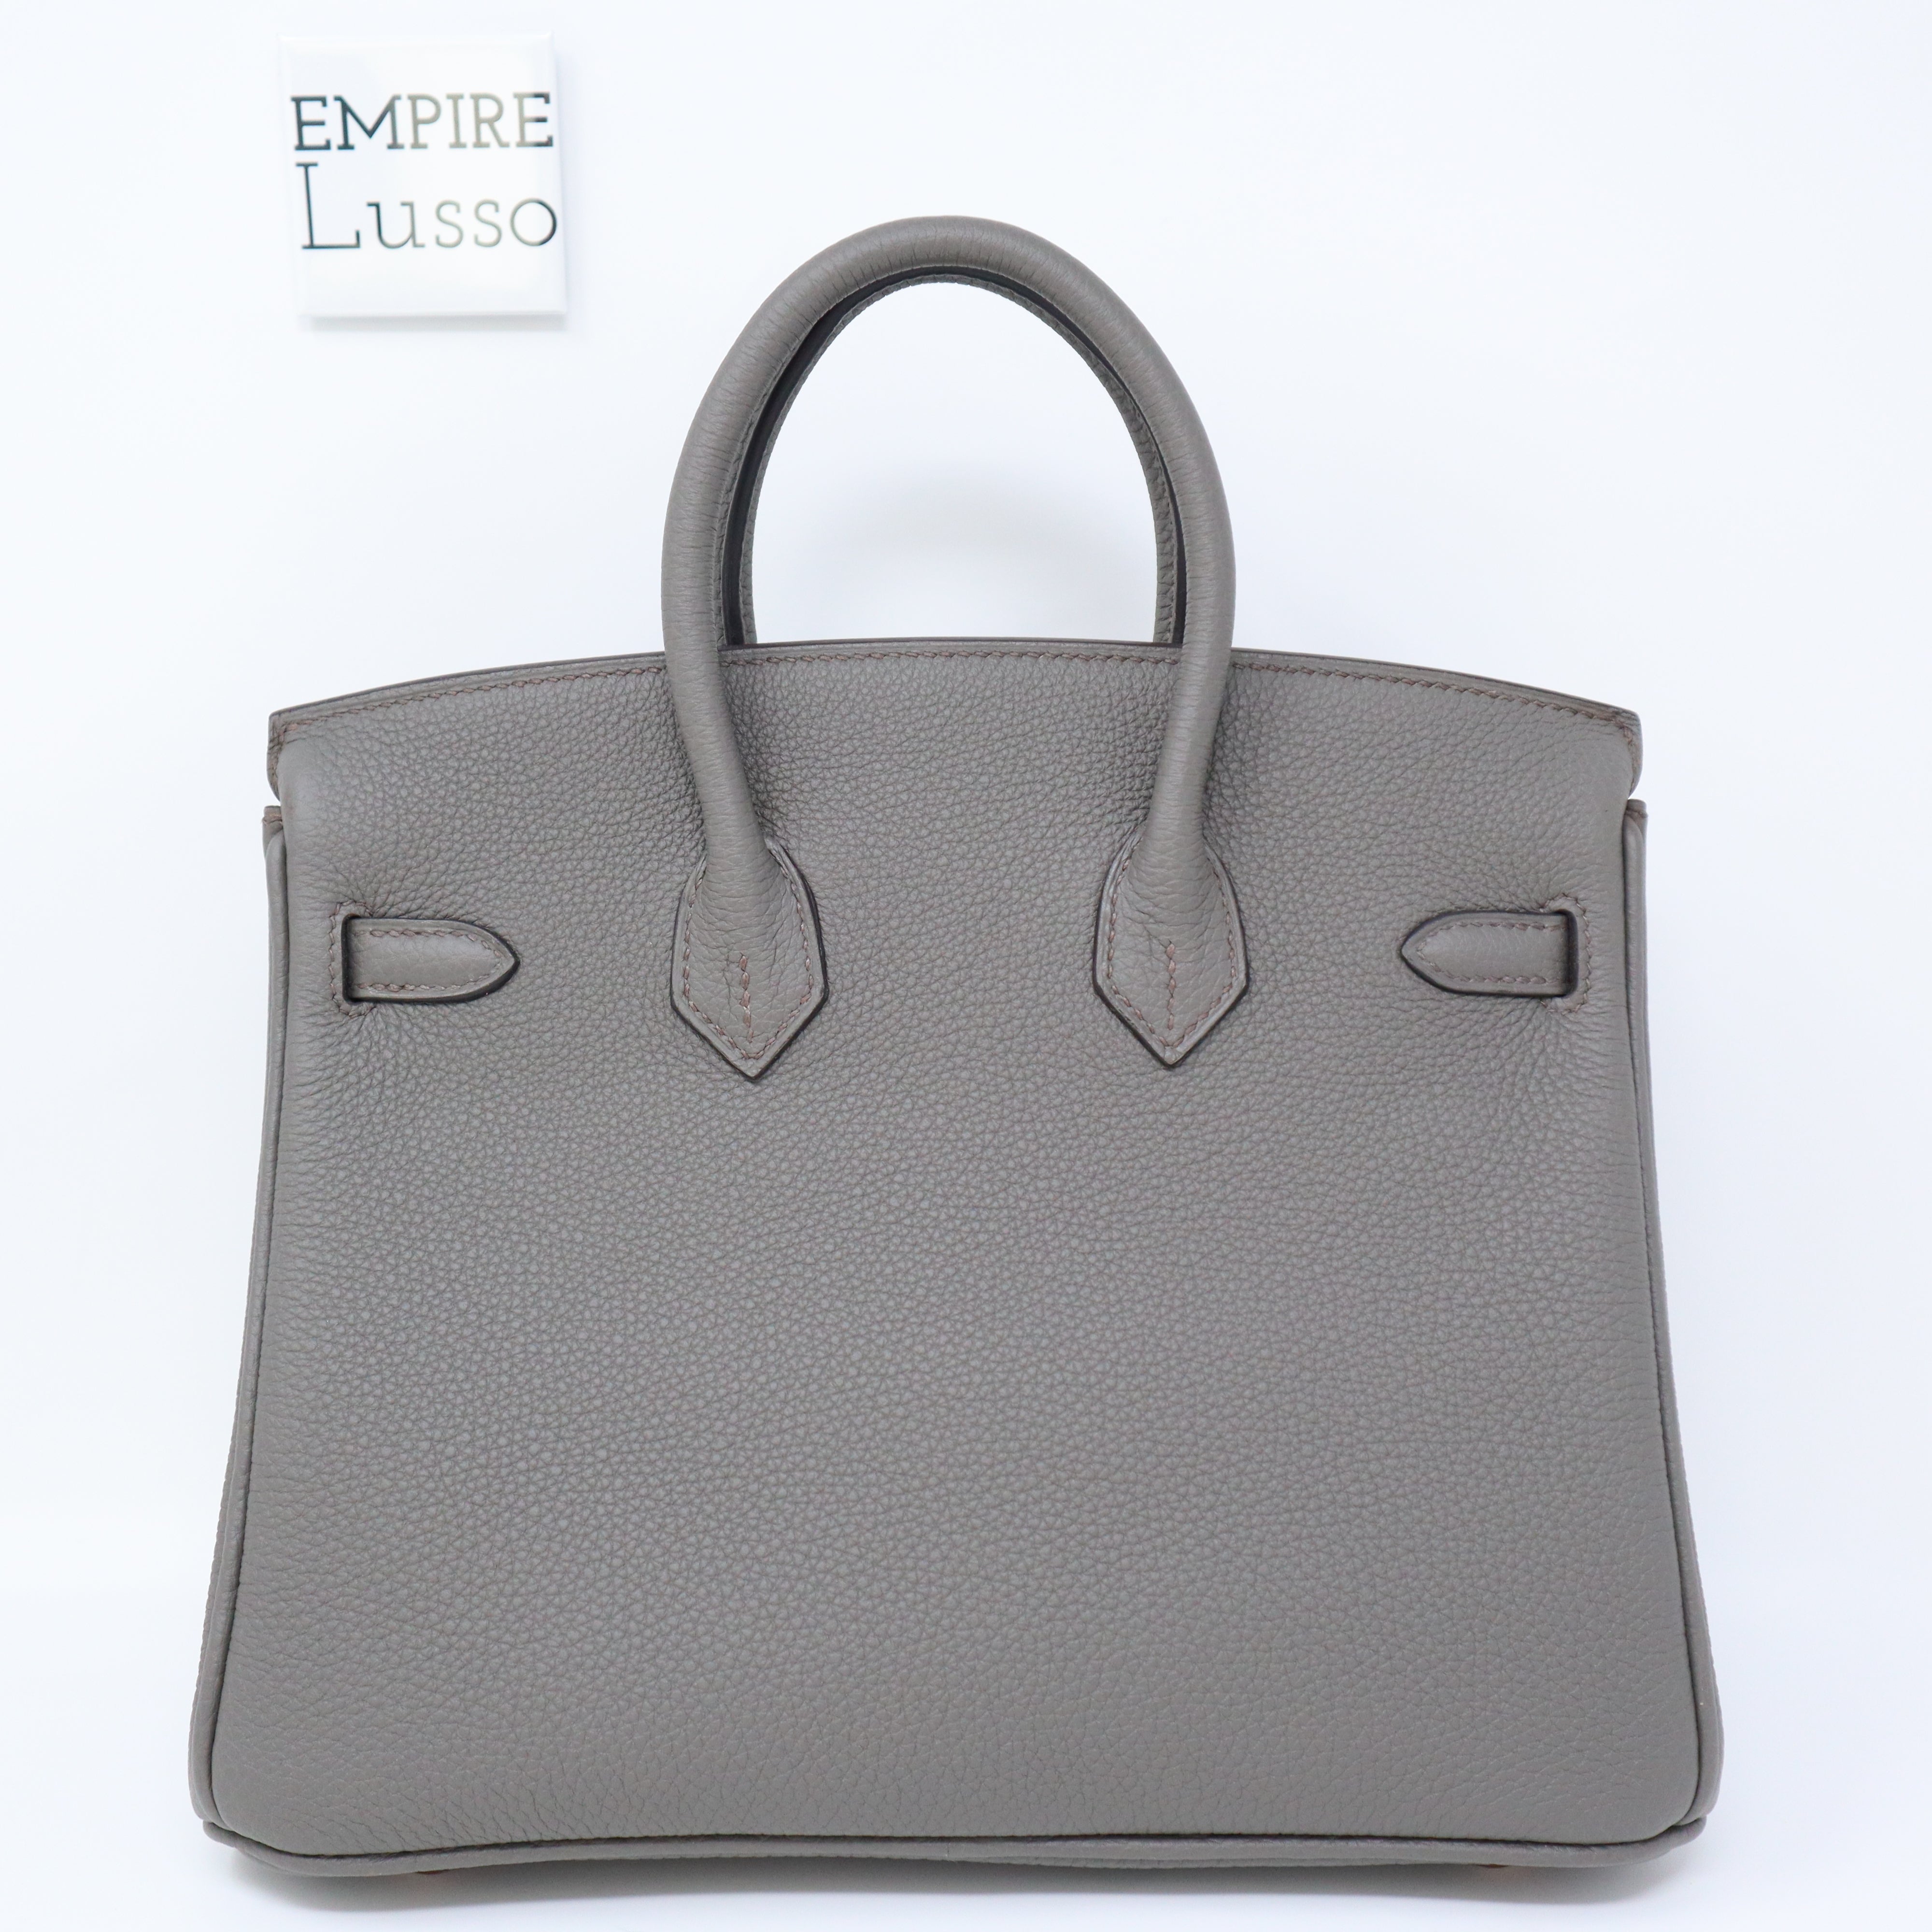 Hermes Birkin 25 Bag Black Togo Leather with Rose Gold Hardware